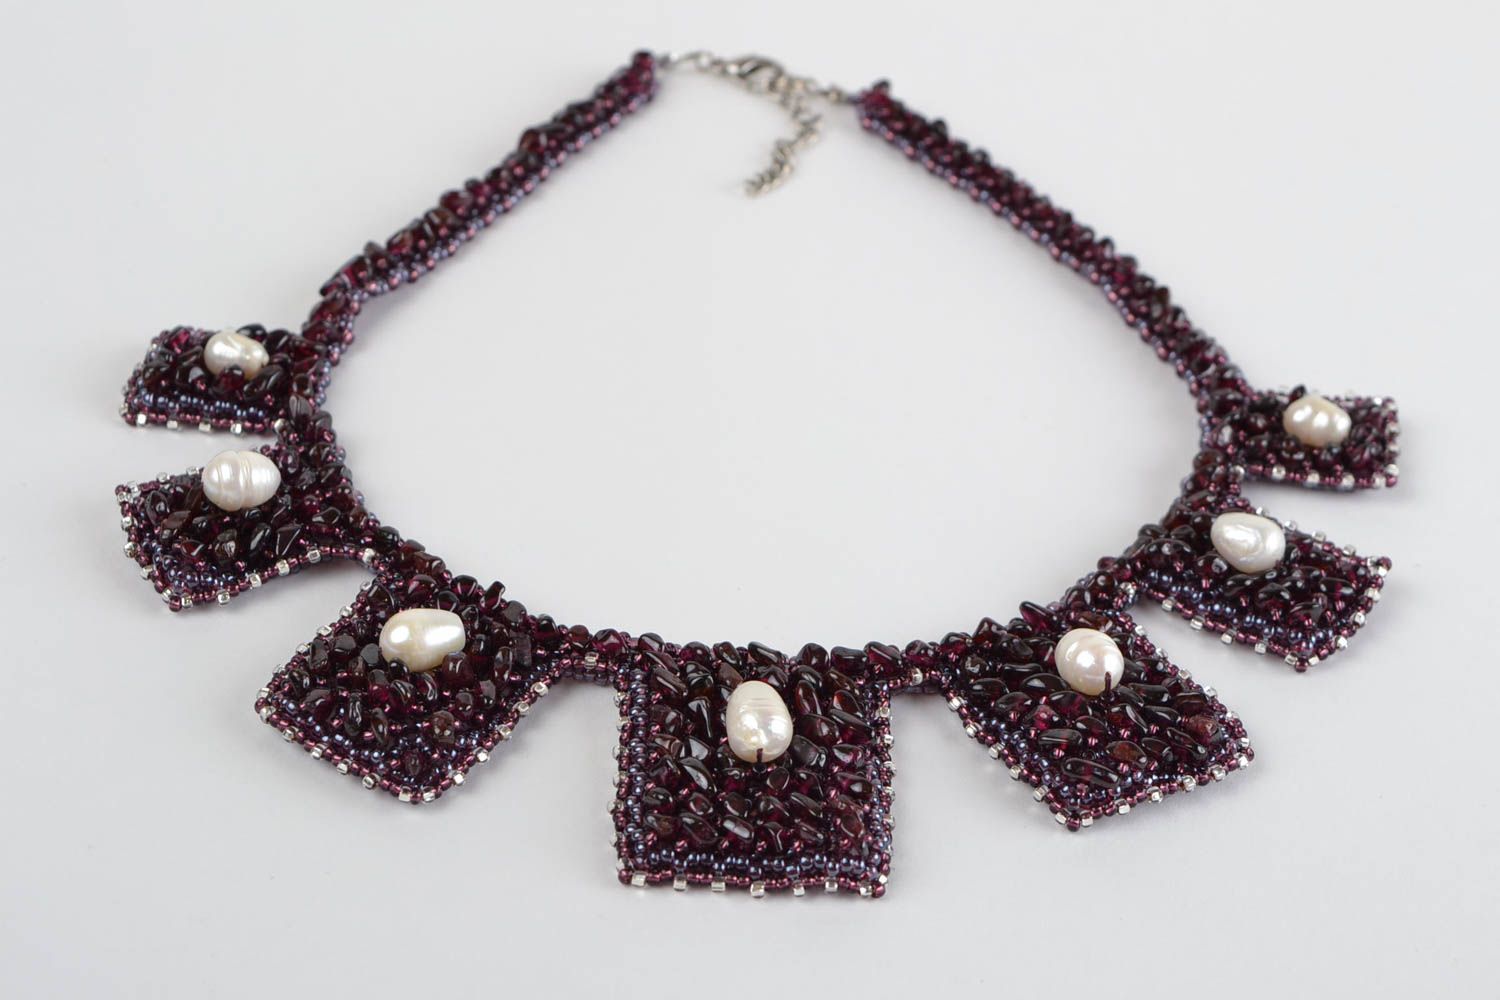 Ожерелье из бисера и натурального камня плетеное красивое ручной работы фото 2